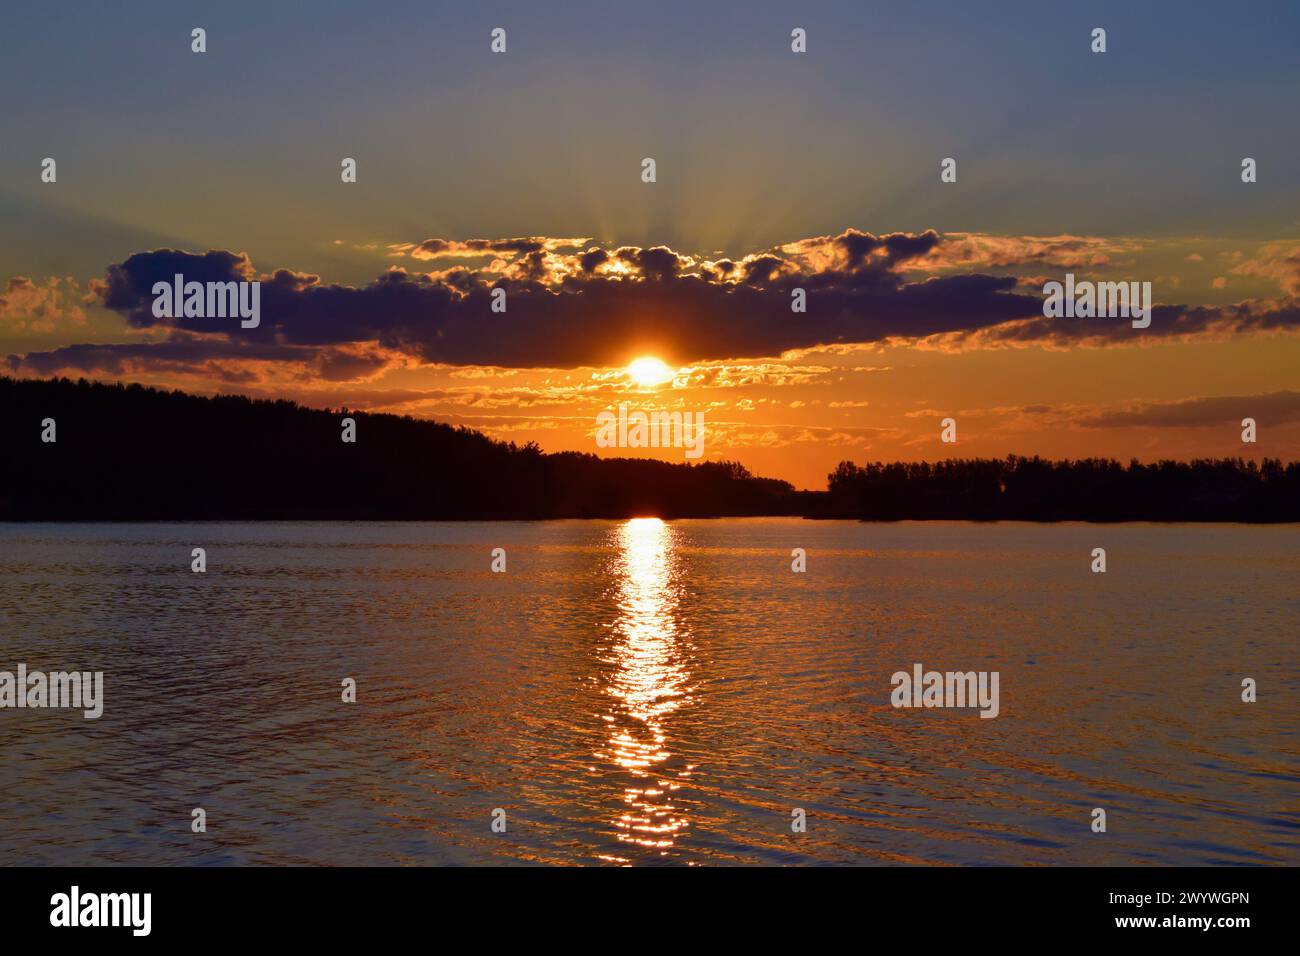 Wunderschöner Sonnenuntergang über dem See. Reflexion der Sonne im Wasser. Abends. Stockfoto